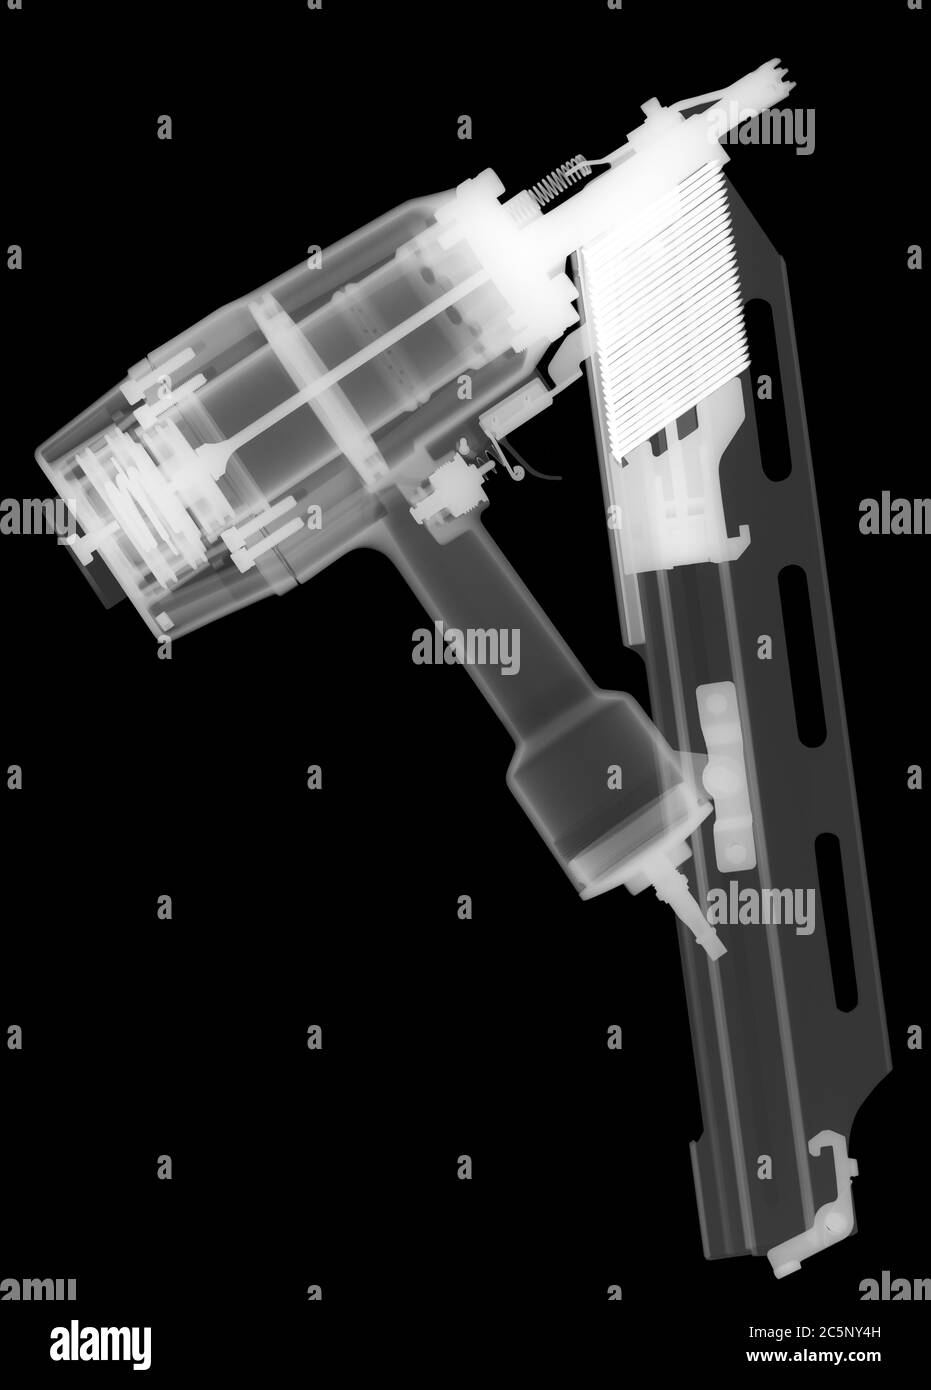 Large nail gun, X-ray. Stock Photo